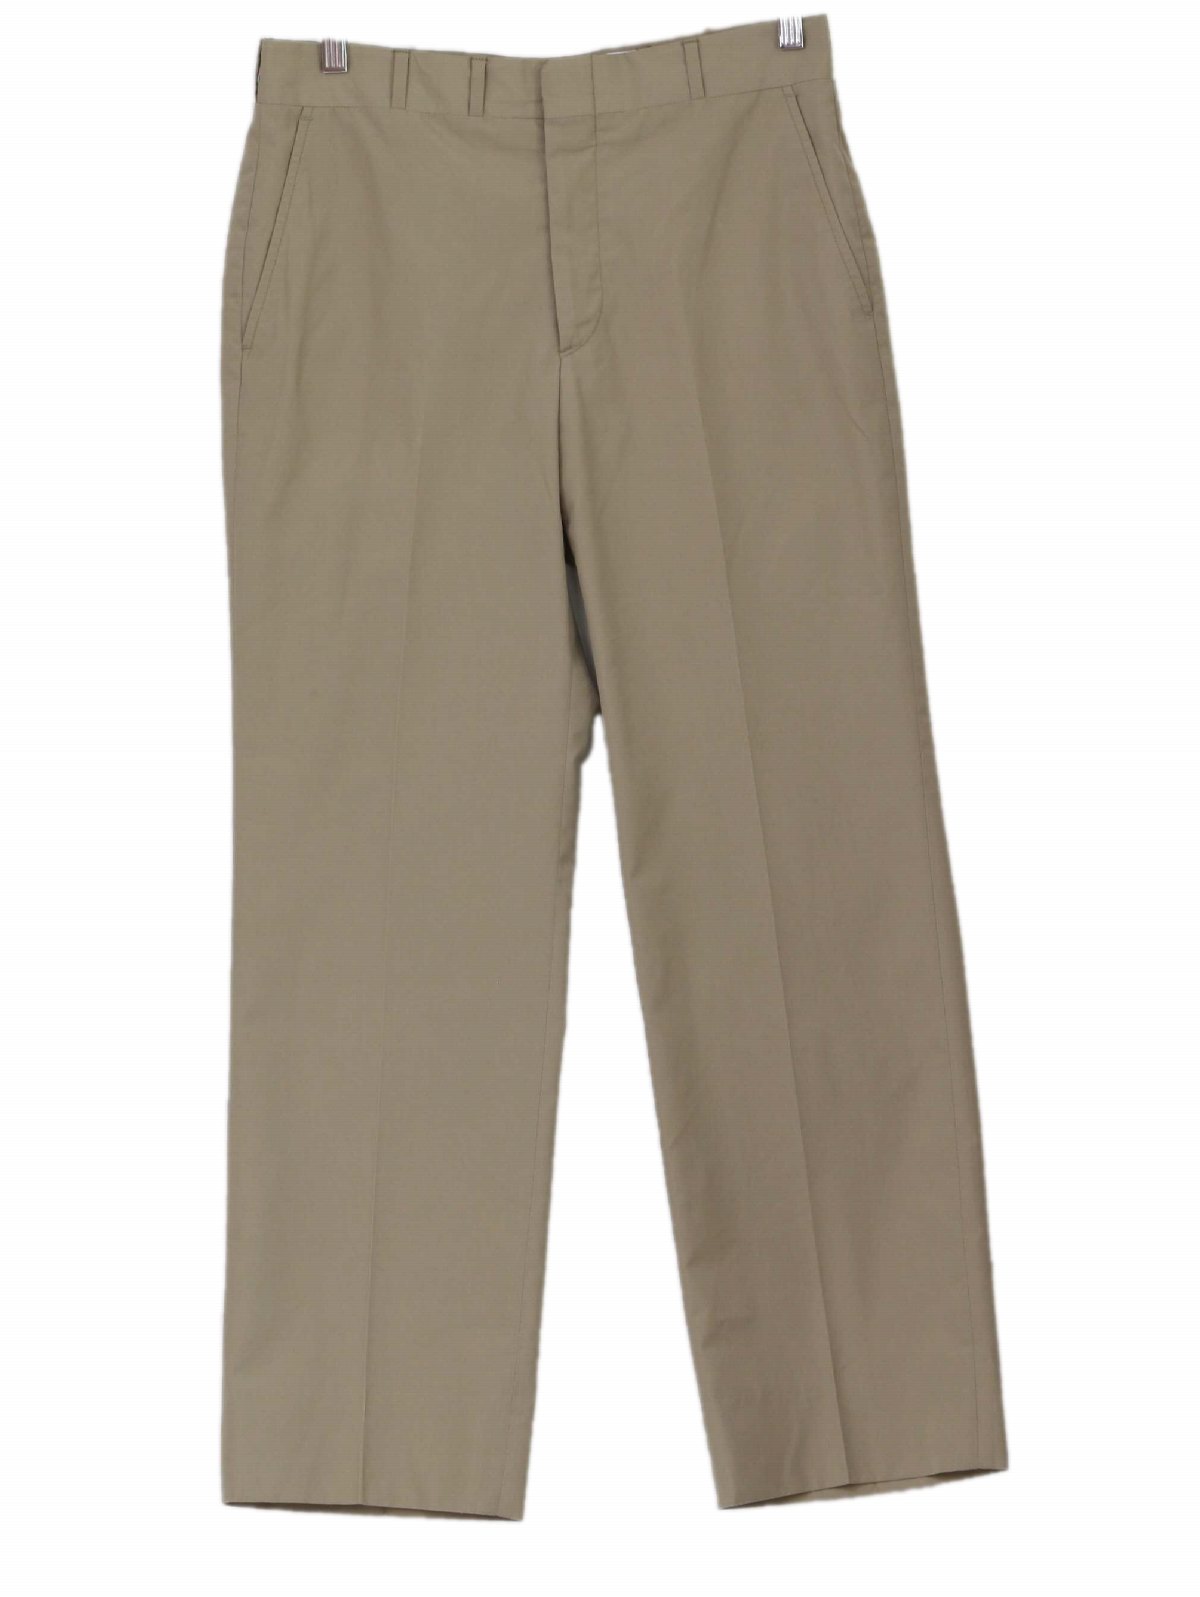 Vintage Corbin Natural Shoulder Trousers 60's Pants: 60s -Corbin ...